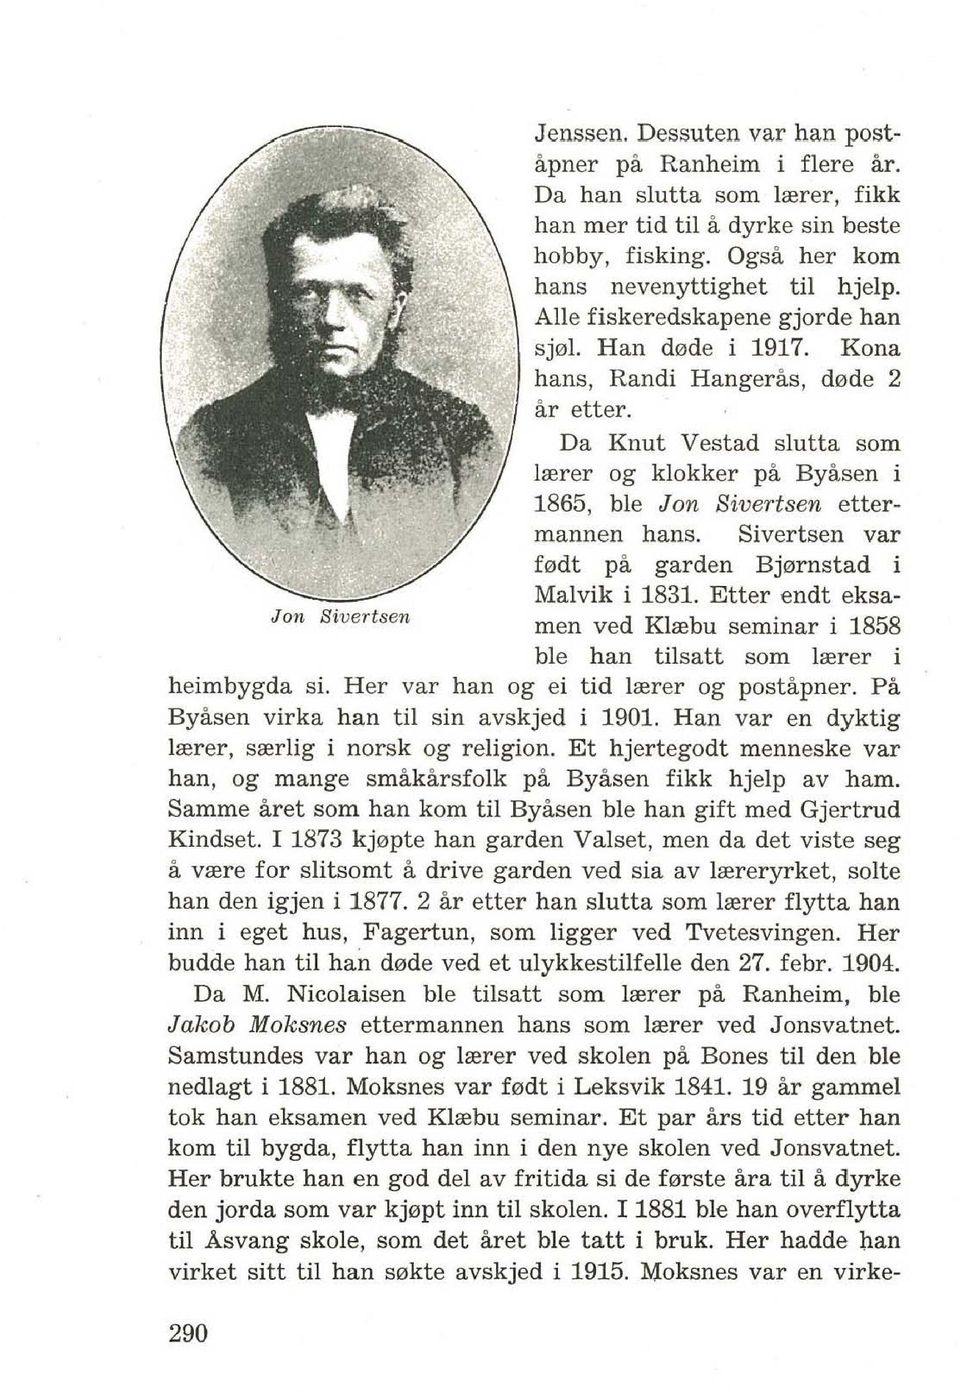 Sivertsen var f0dt pa garden Bj0rnstad i Malvik i 1831. Etter endt eksamen ved Klrebu seminar i 1858 ble han tilsatt som lrerer i heimbygda si. Her var han og ei tid lrerer og postapner.